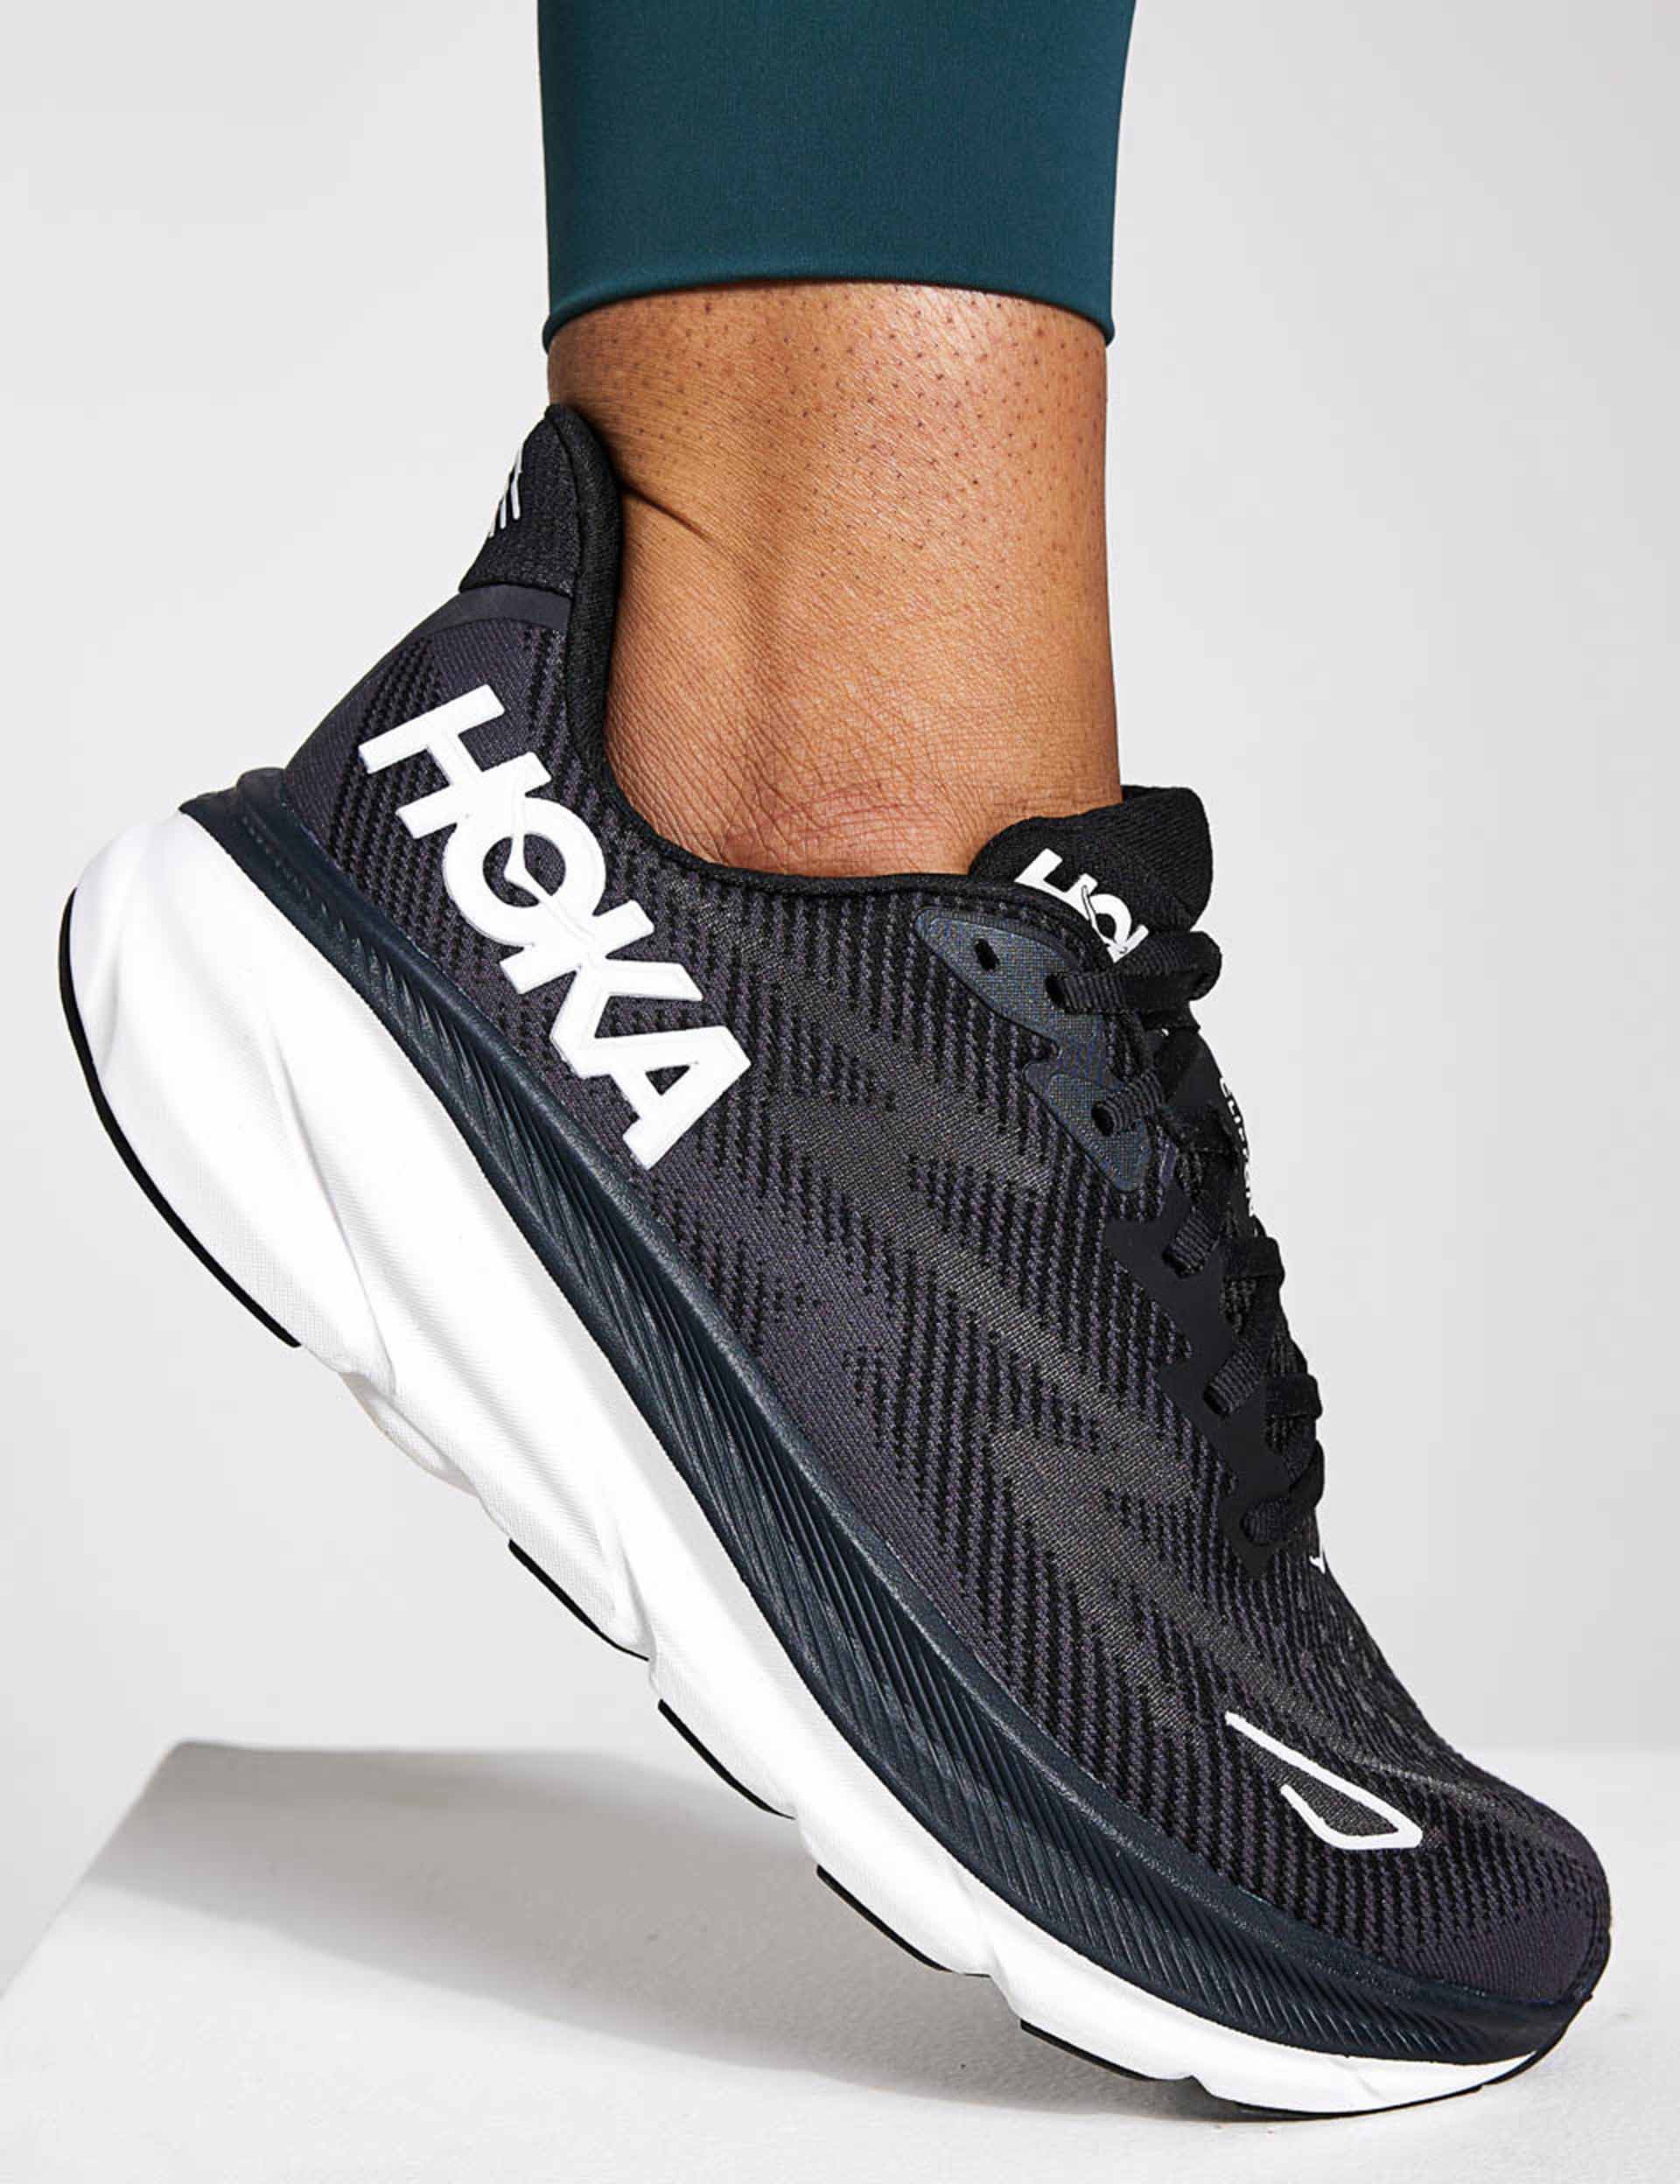  Hoka Men's Clifton 9 Sneaker, Black/White, 7.5